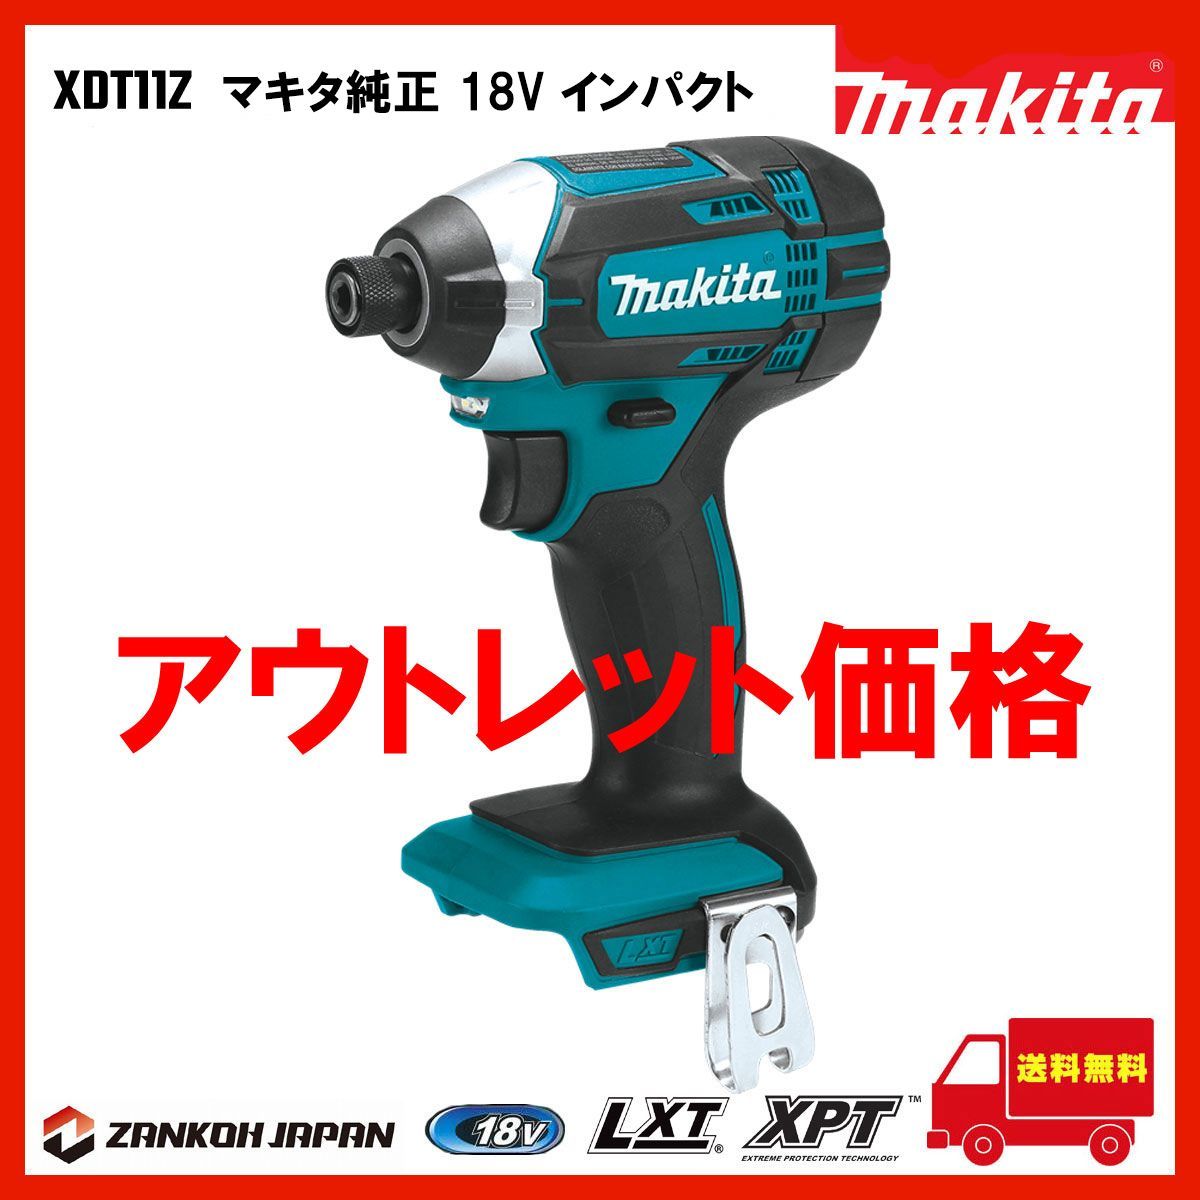 インパクトドライバー マキタ 18V 充電式 MAKITA XDT11Z 青 - メルカリ